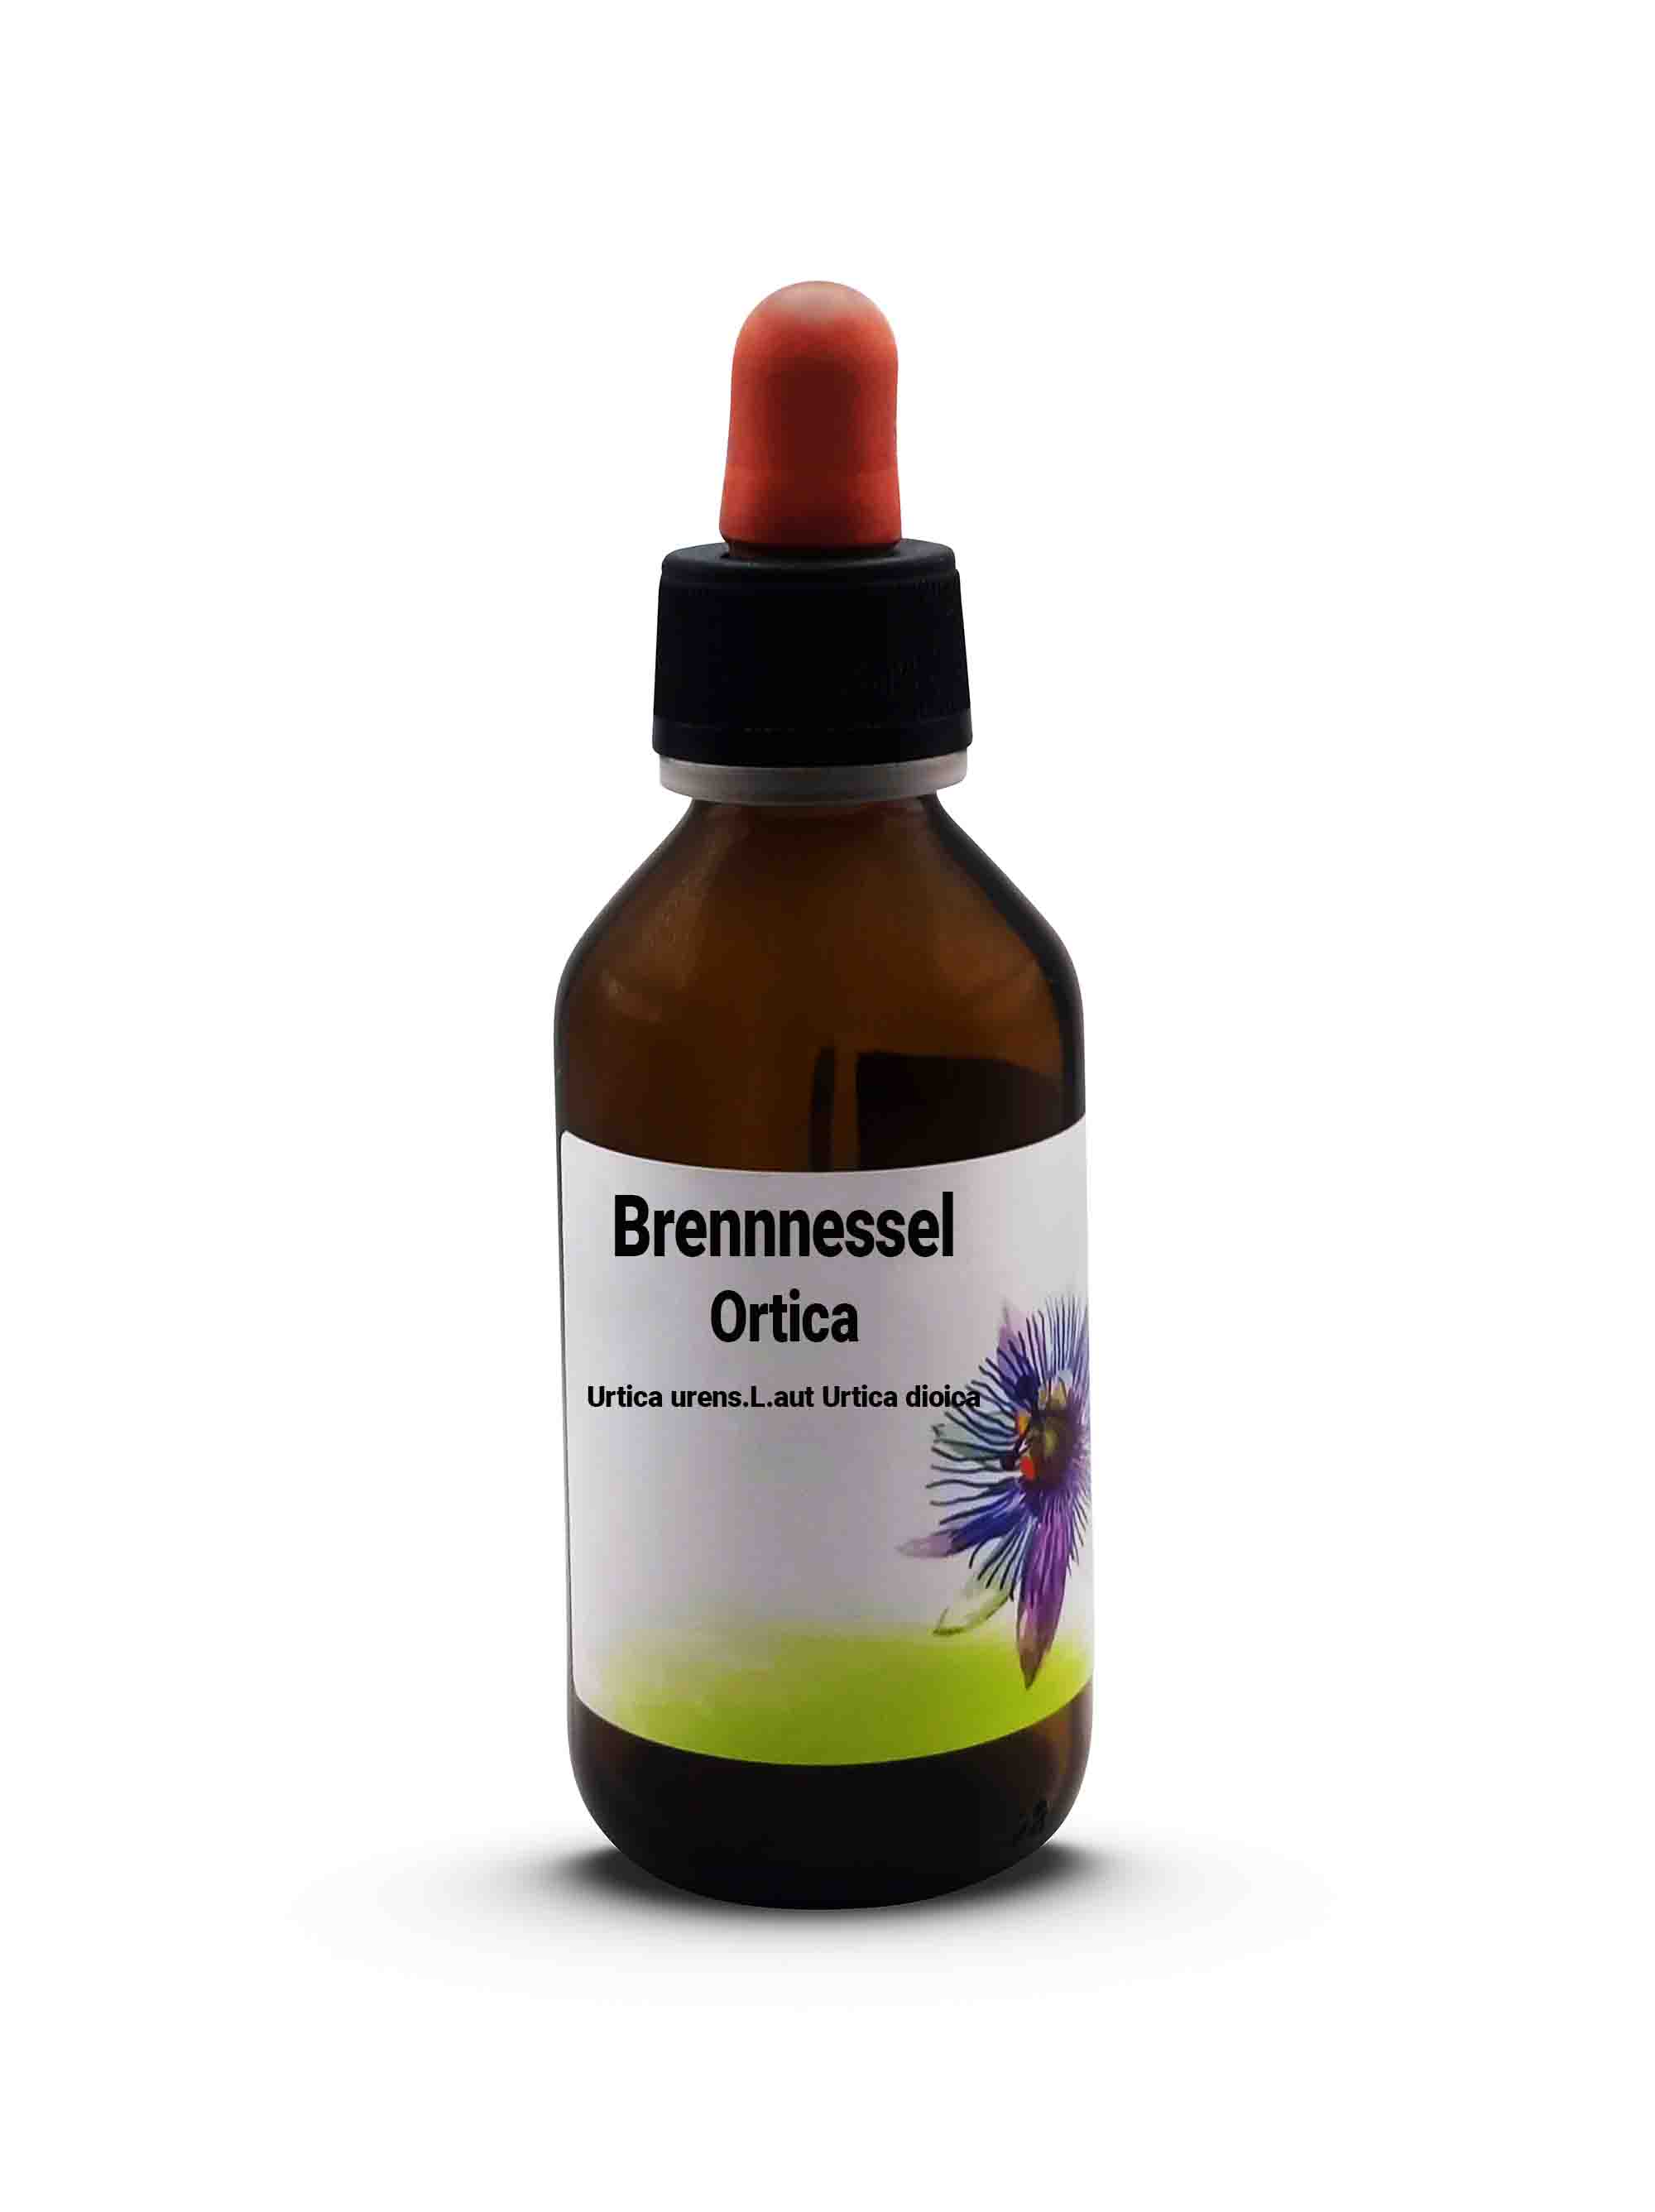 Brennnessel Ortica Urtica urens. L. aut Urtica dioica 100 ml